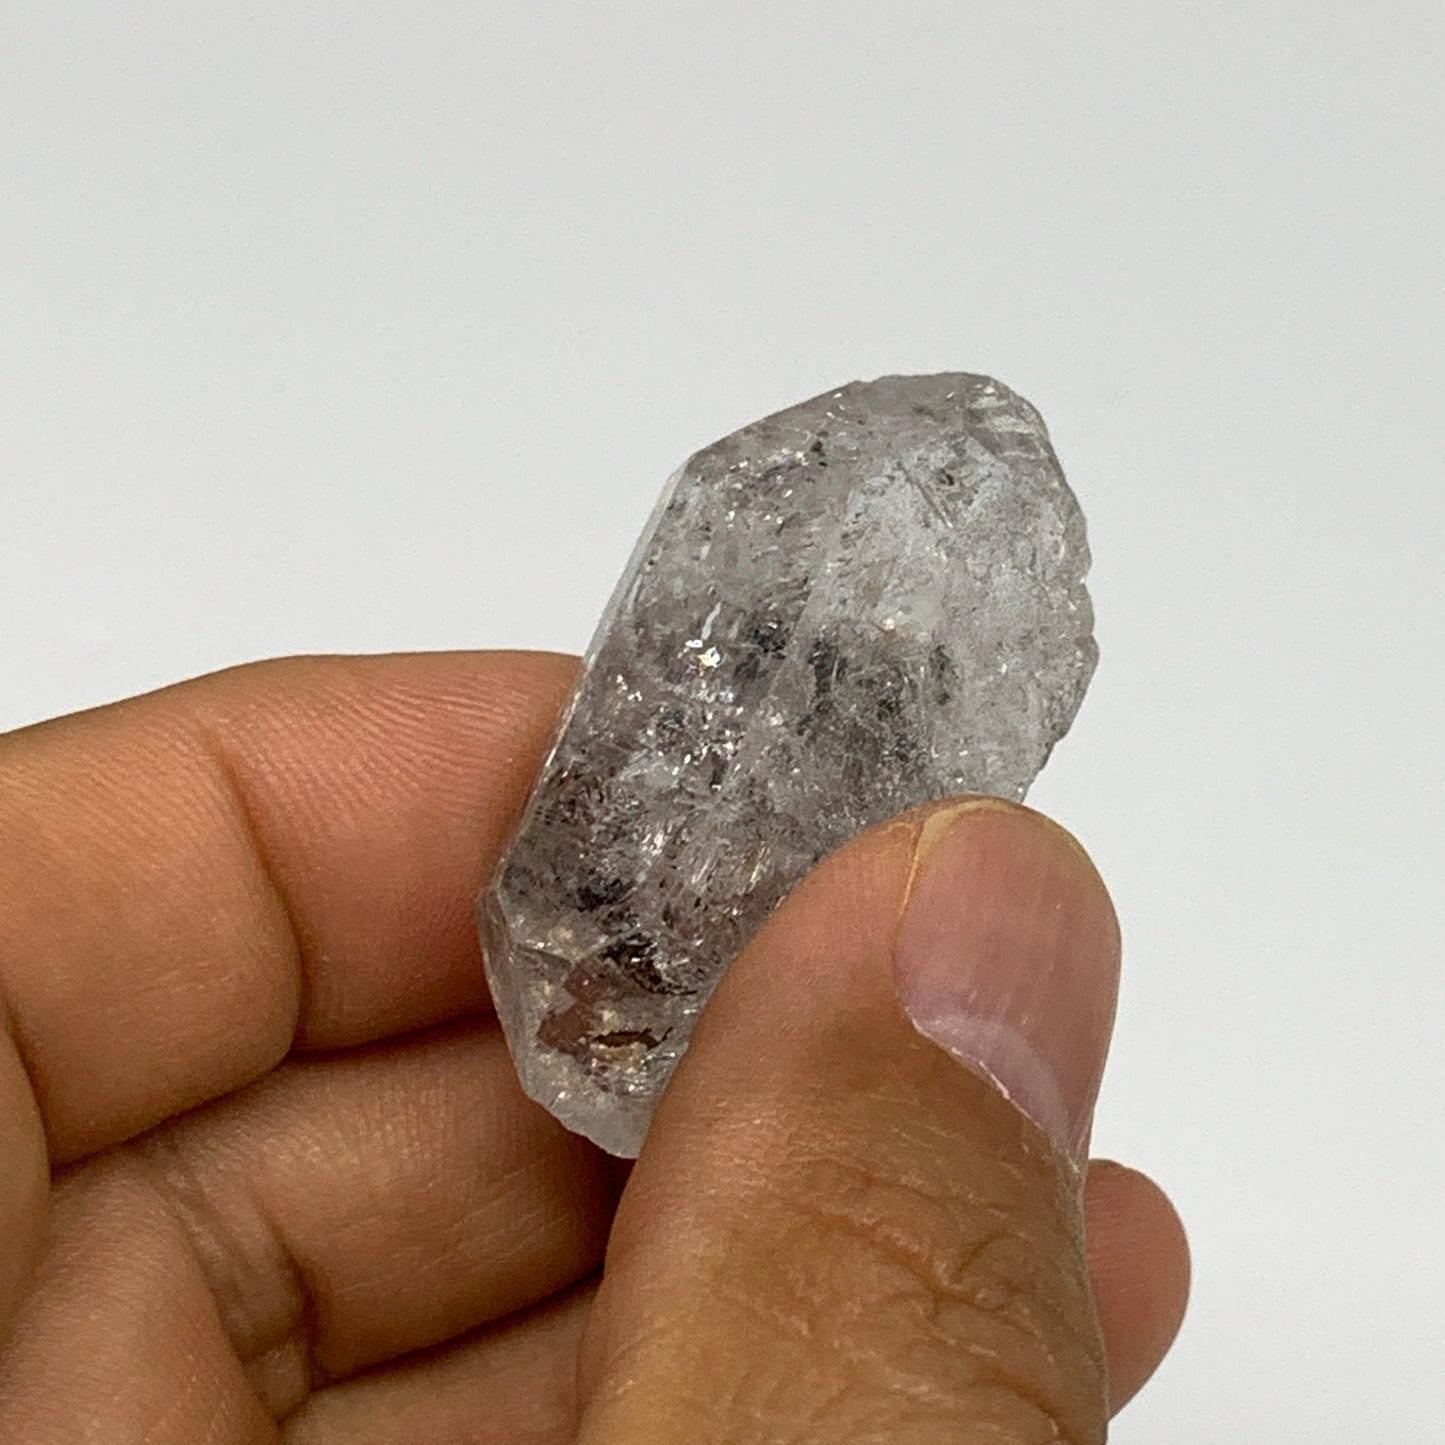 14.7g, 1.5"x0.9"x0.4", Natural Window Quartz Crystal Terminated @Pakistan,B27518